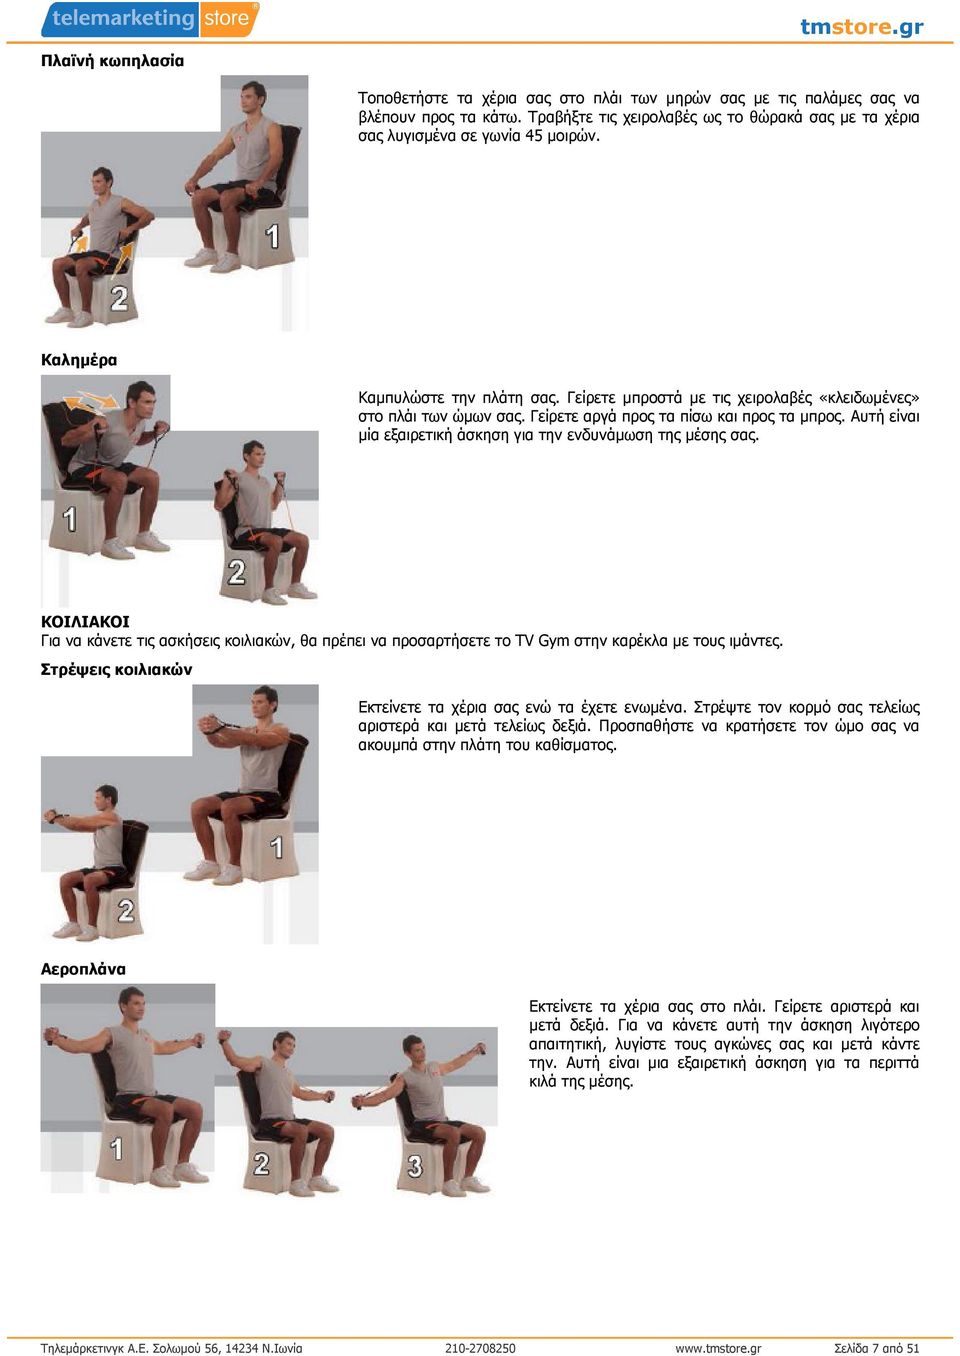 Αυτή είναι µία εξαιρετική άσκηση για την ενδυνάµωση της µέσης σας. ΚΟΙΛΙΑΚΟΙ Για να κάνετε τις ασκήσεις κοιλιακών, θα πρέπει να προσαρτήσετε το TV Gym στην καρέκλα µε τους ιµάντες.